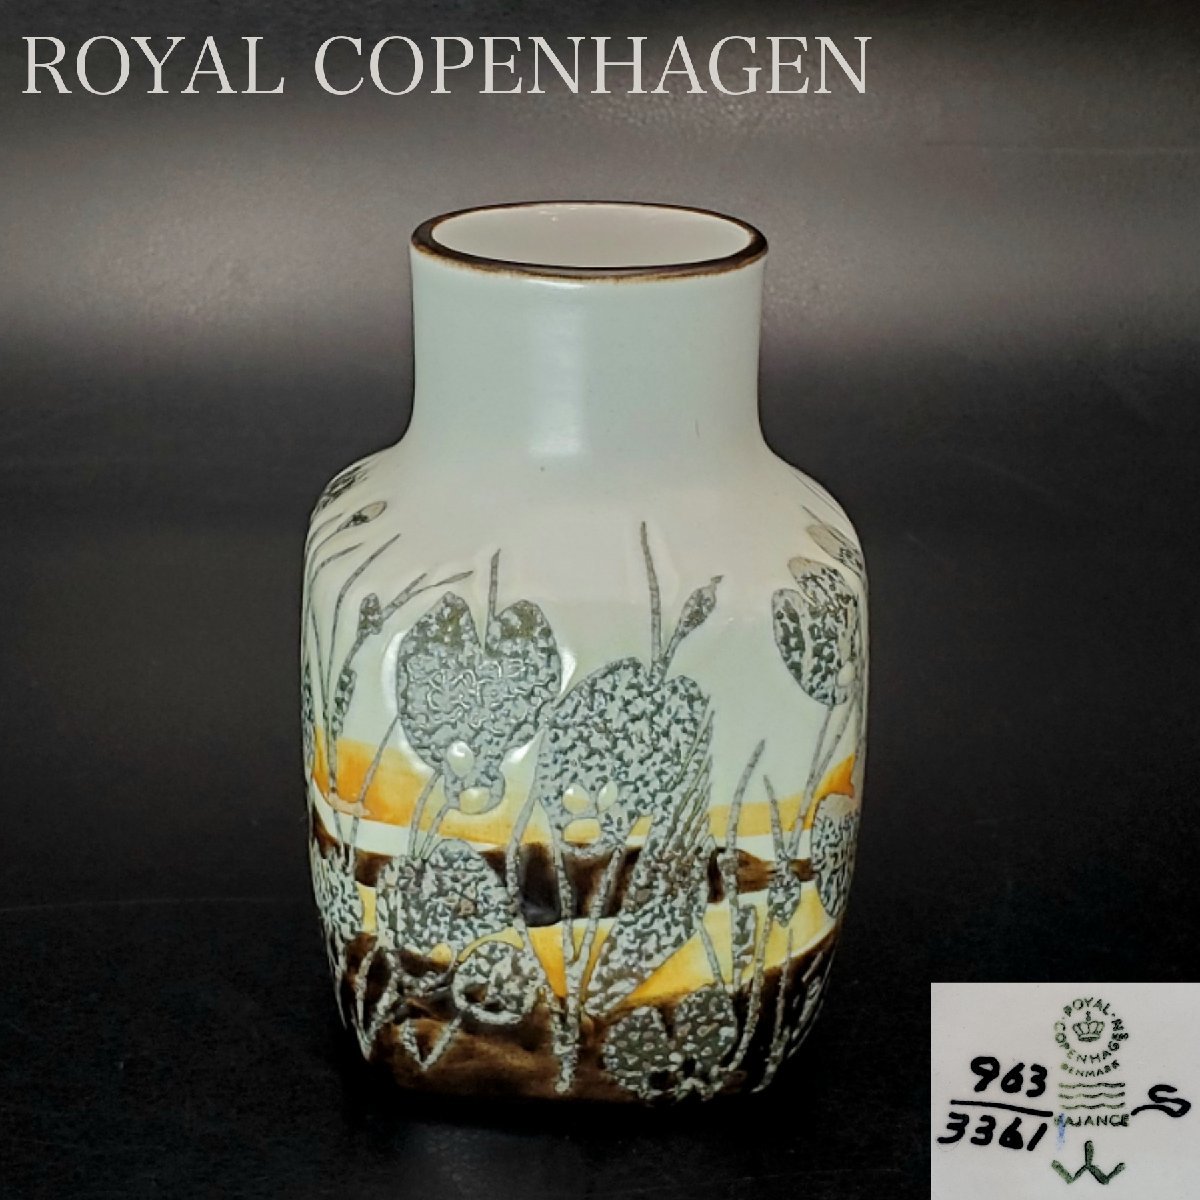 【宝蔵】ROYAL COPENHAGEN ロイヤルコペンハーゲン フラワーベース イヴァン・ワイス Ivan Weiss 963/3361 11㎝ 花瓶 花器 ヴィンテージ